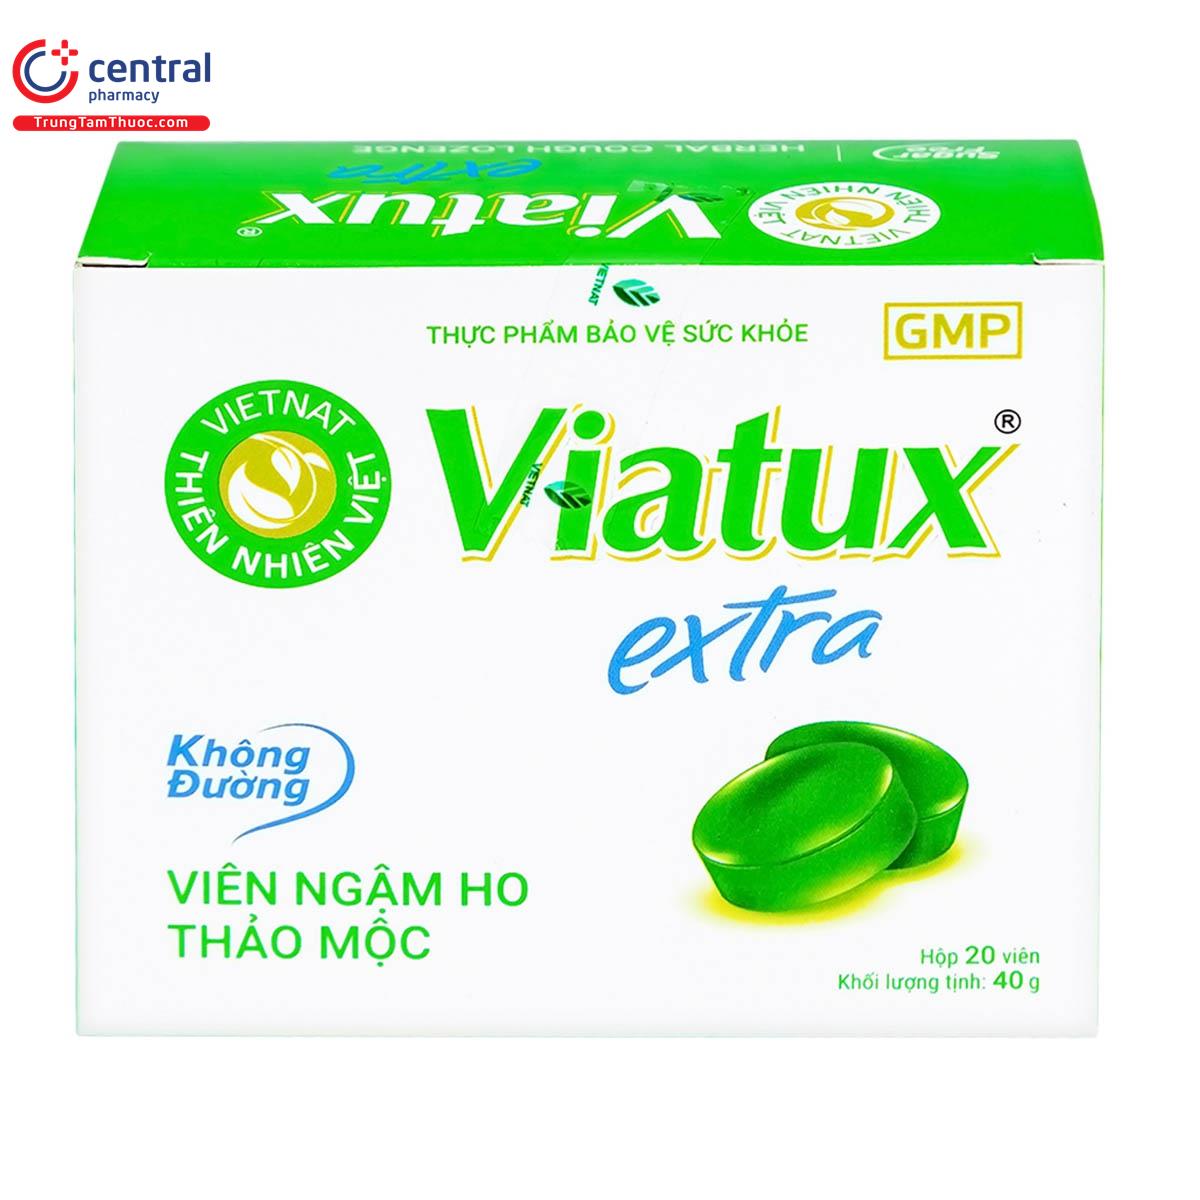 viatux extra khong duong 1 A0273